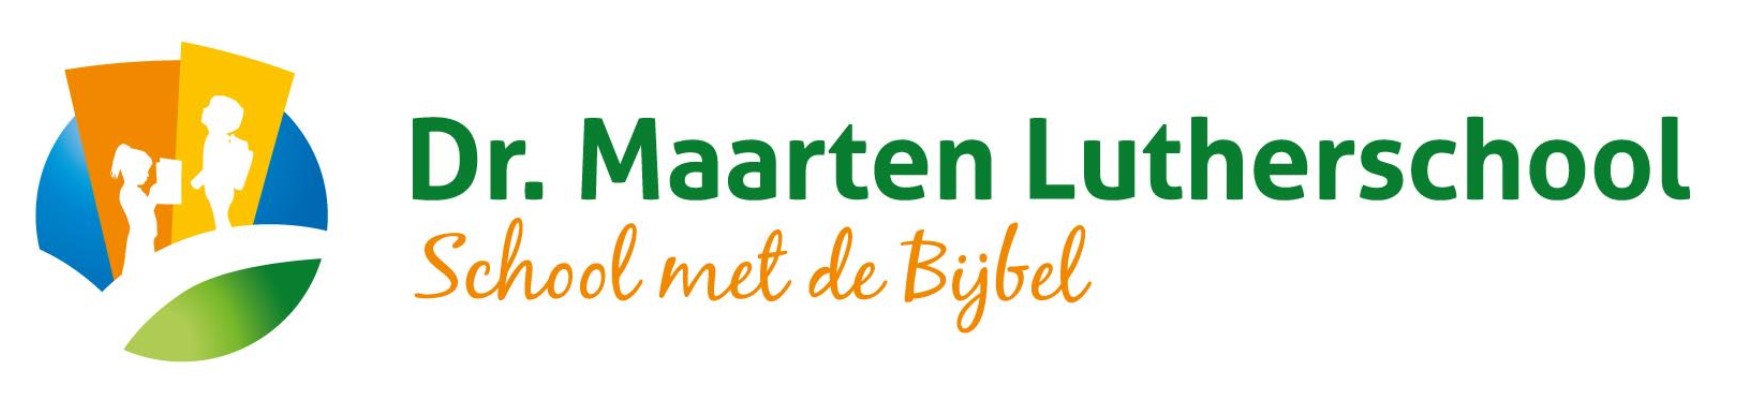 Dr. Maarten Lutherschool